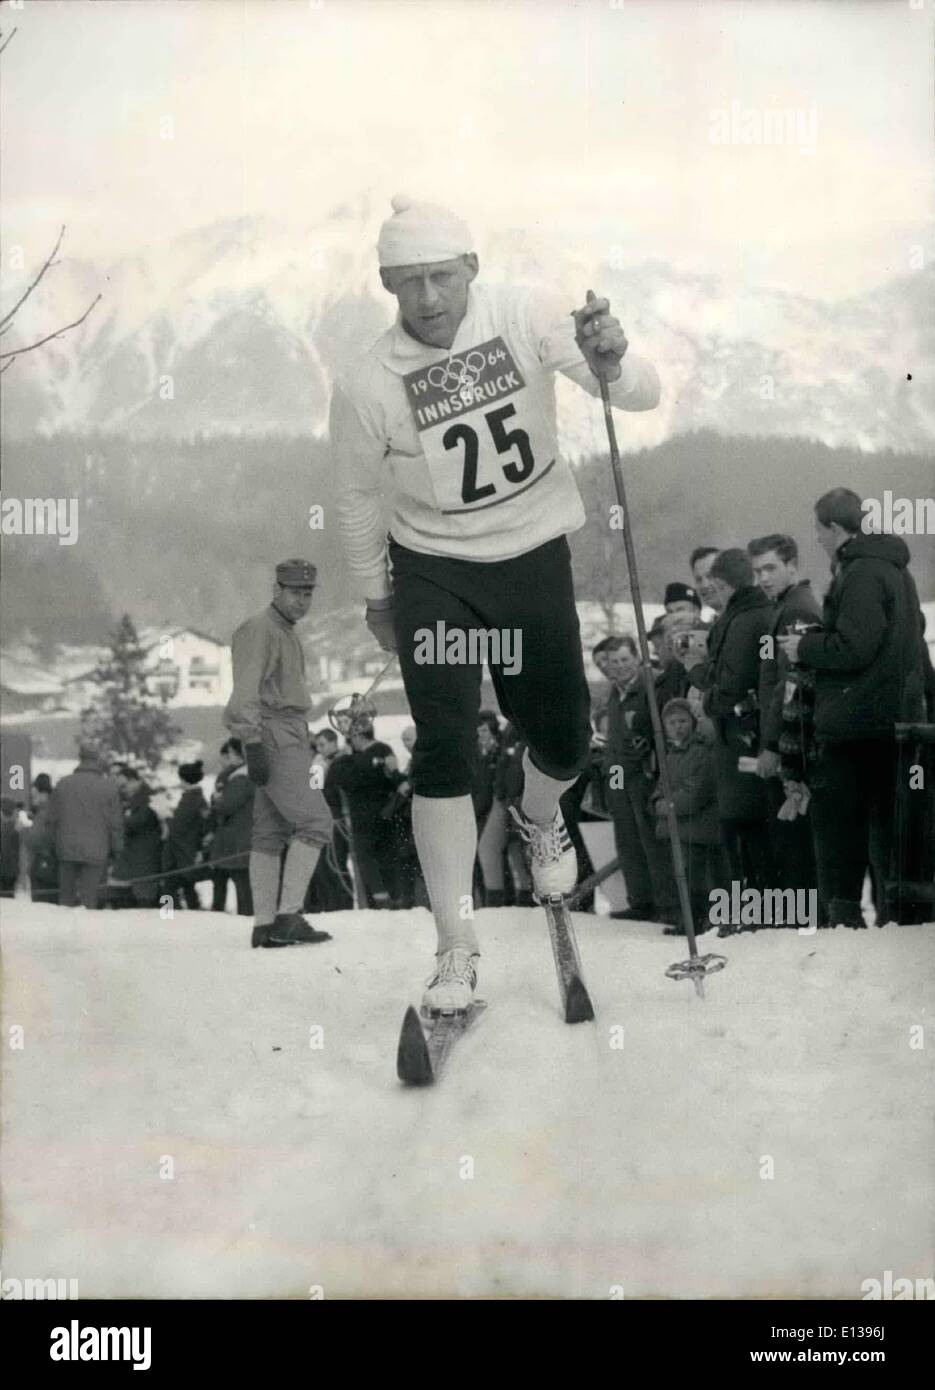 29 février 2012 - Tormod Knutsen Norvège Ski Cross combiné Médaille d'or aux Jeux Olympiques d'hiver de 1964 Inssbruck polluée montre Technicien Banque D'Images